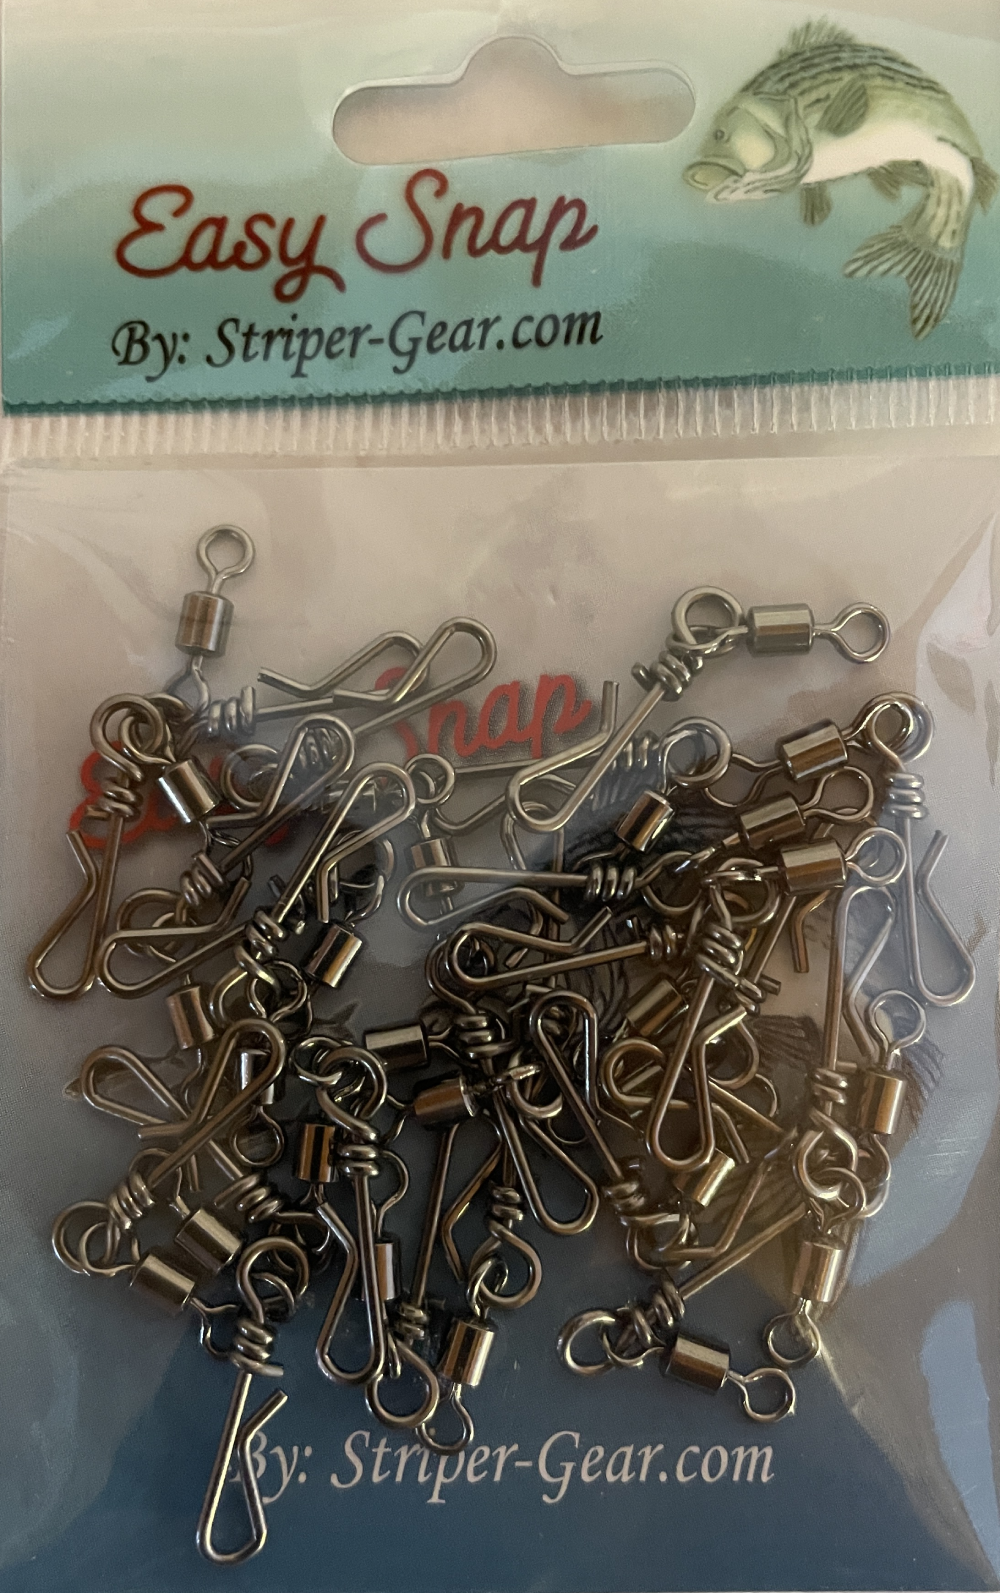 STRIPER-GEAR SNAP/BARREL Swivel Size 10 / 10 lb